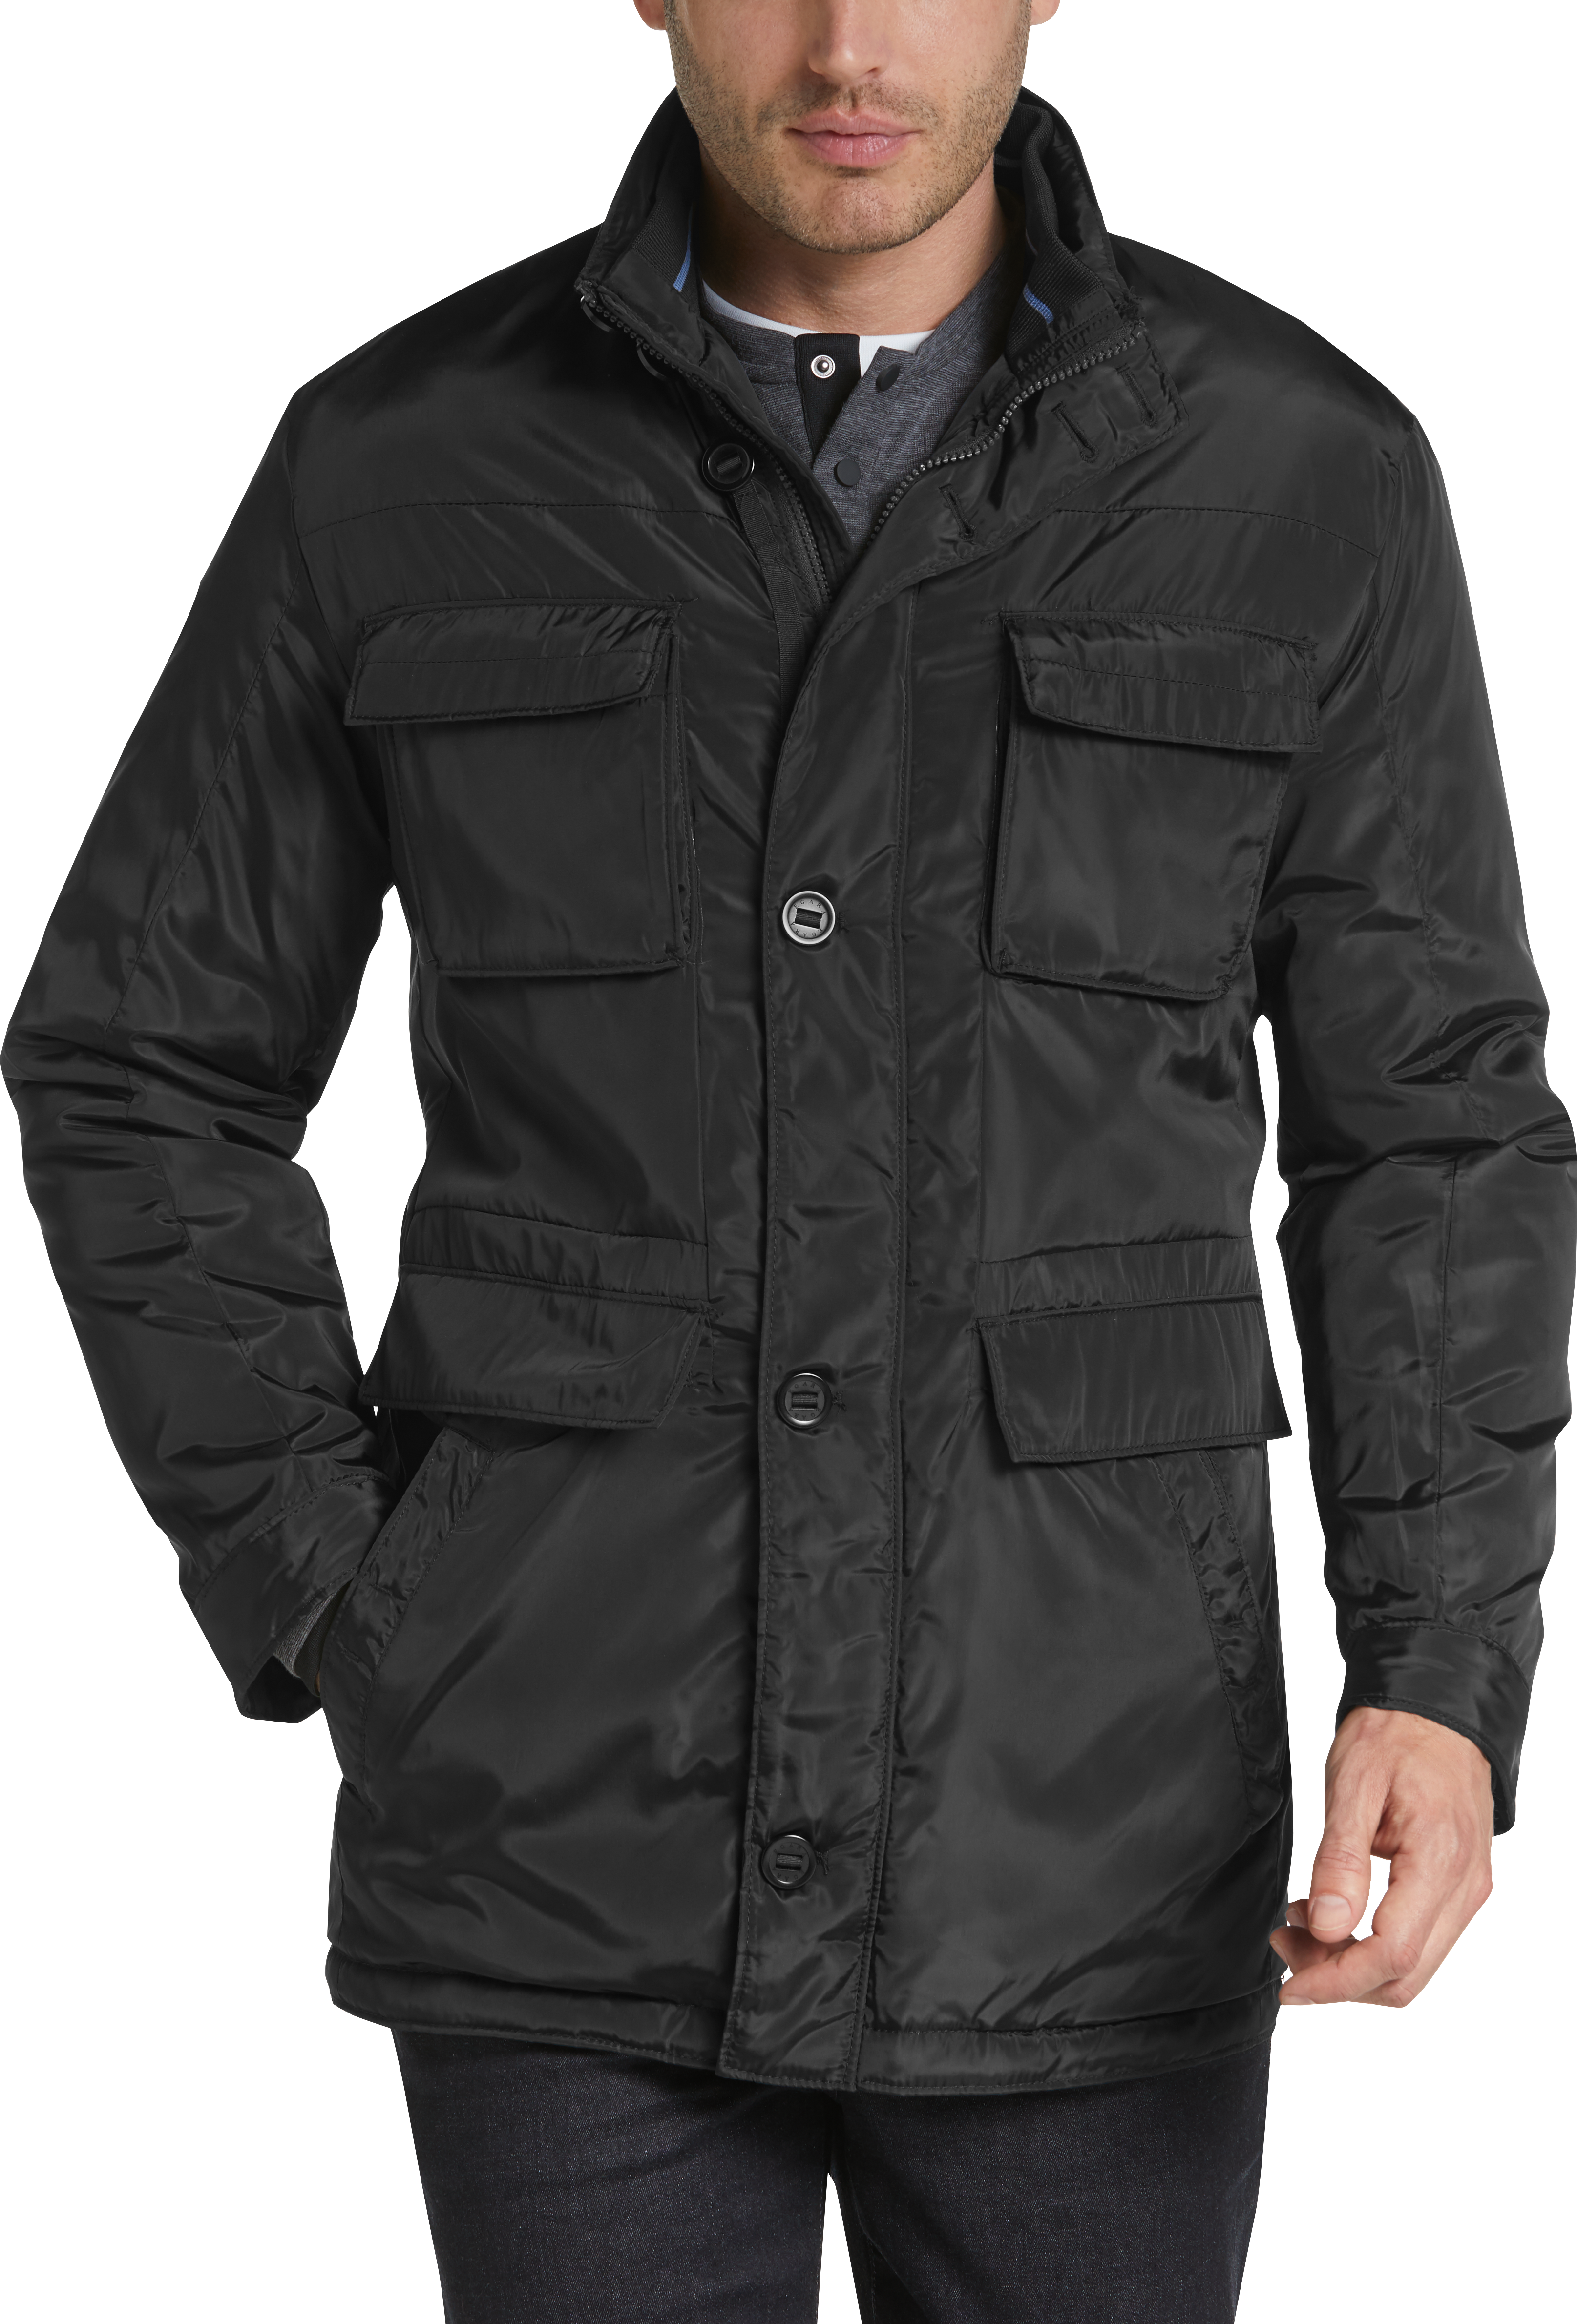 Egara Black Multi-Pocket Jacket - Men's Sale | Men's Wearhouse